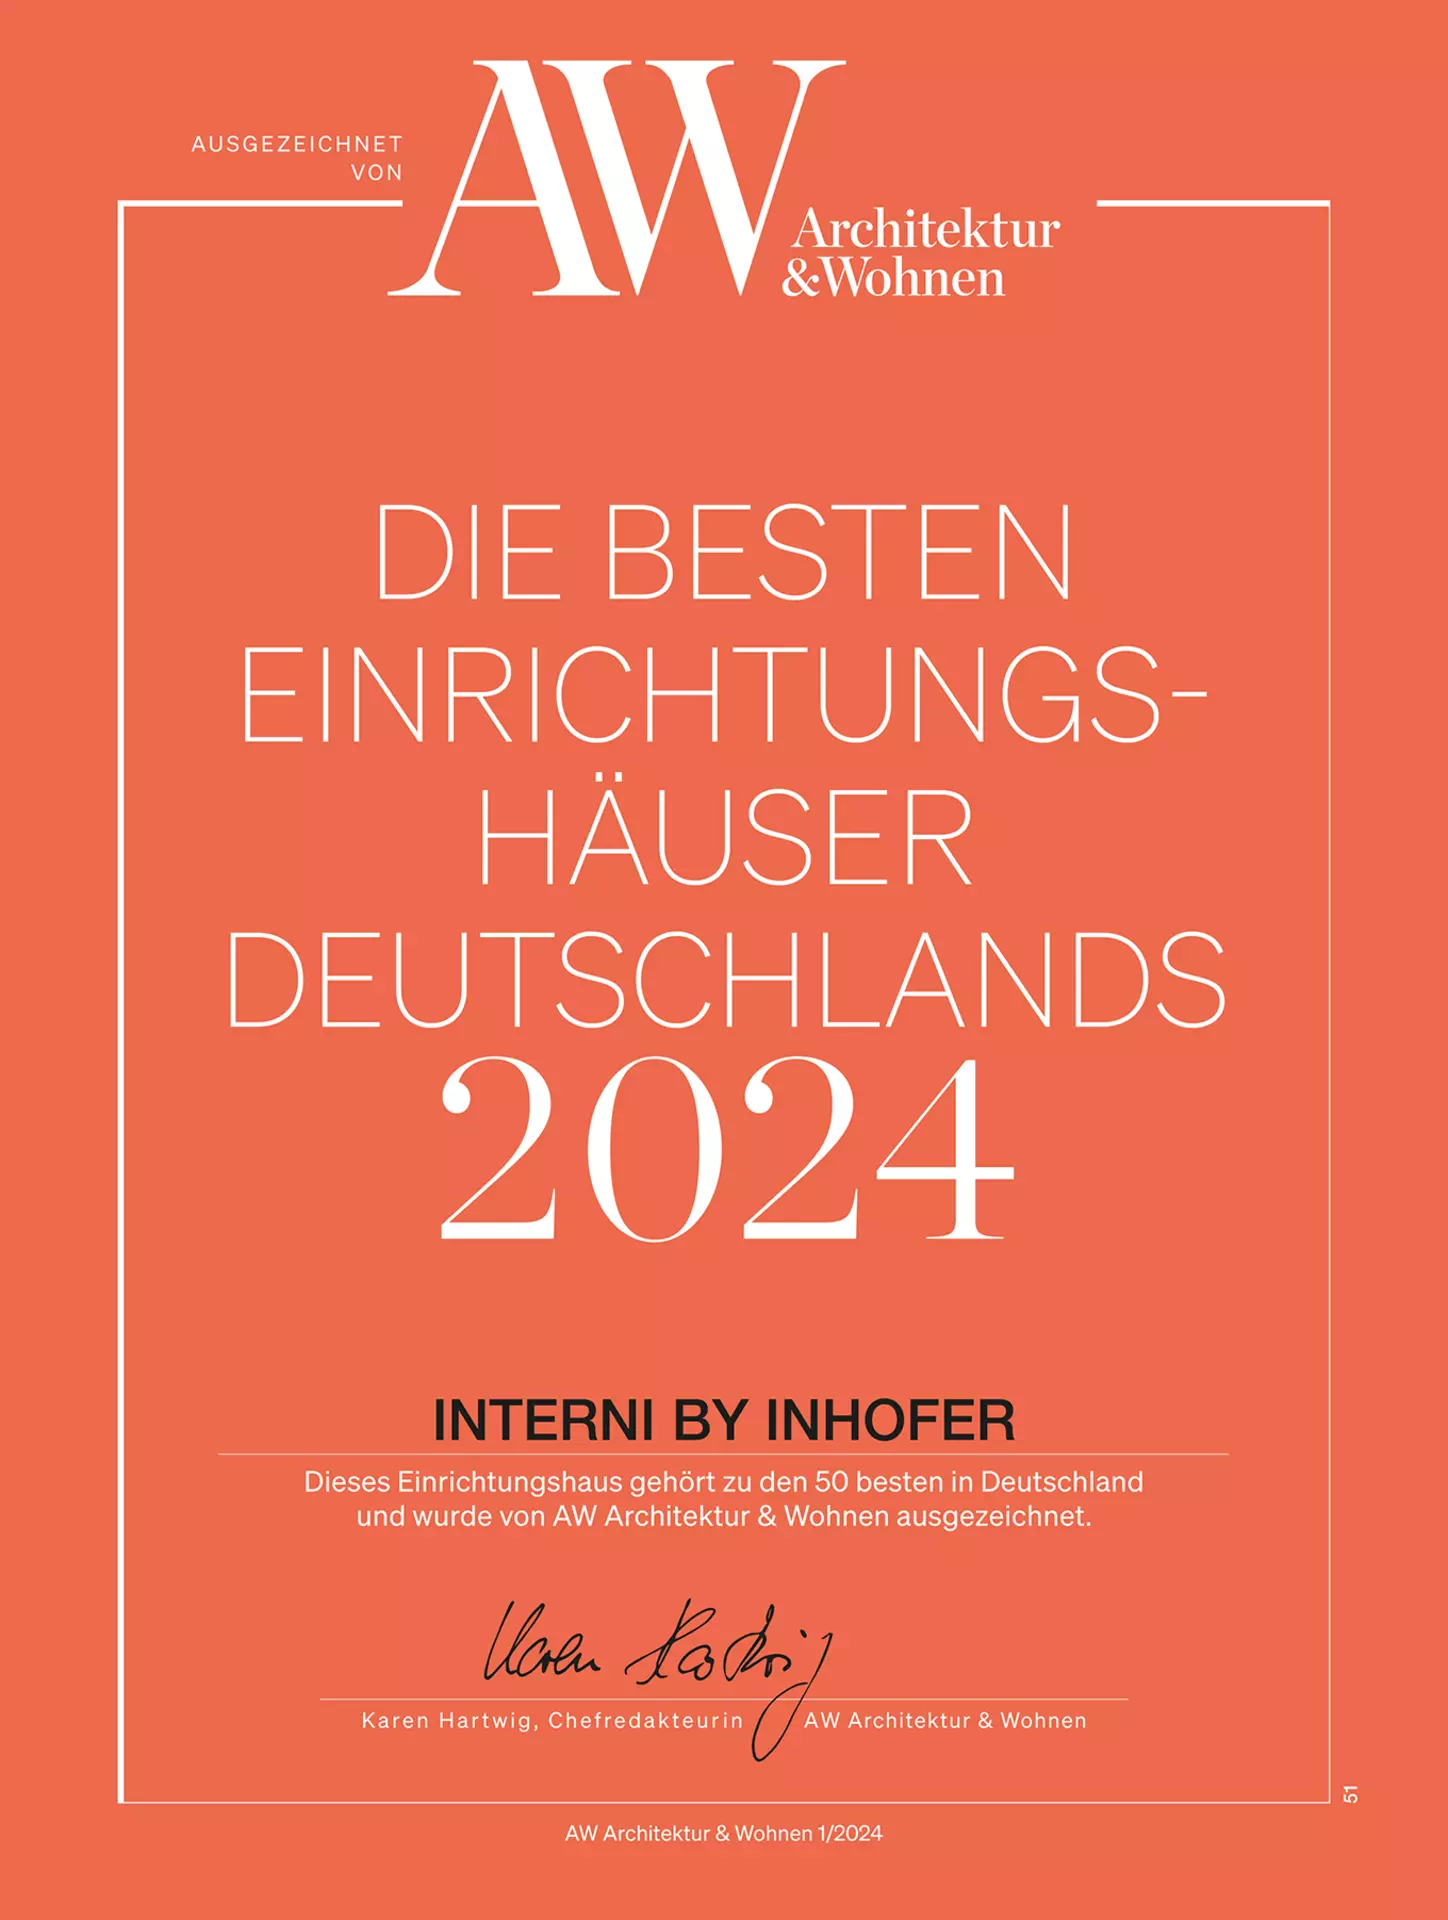 Urkunde: Interni by inhofer wurde zu einem der besten Einrichtungshäuser 2024 gekürt.